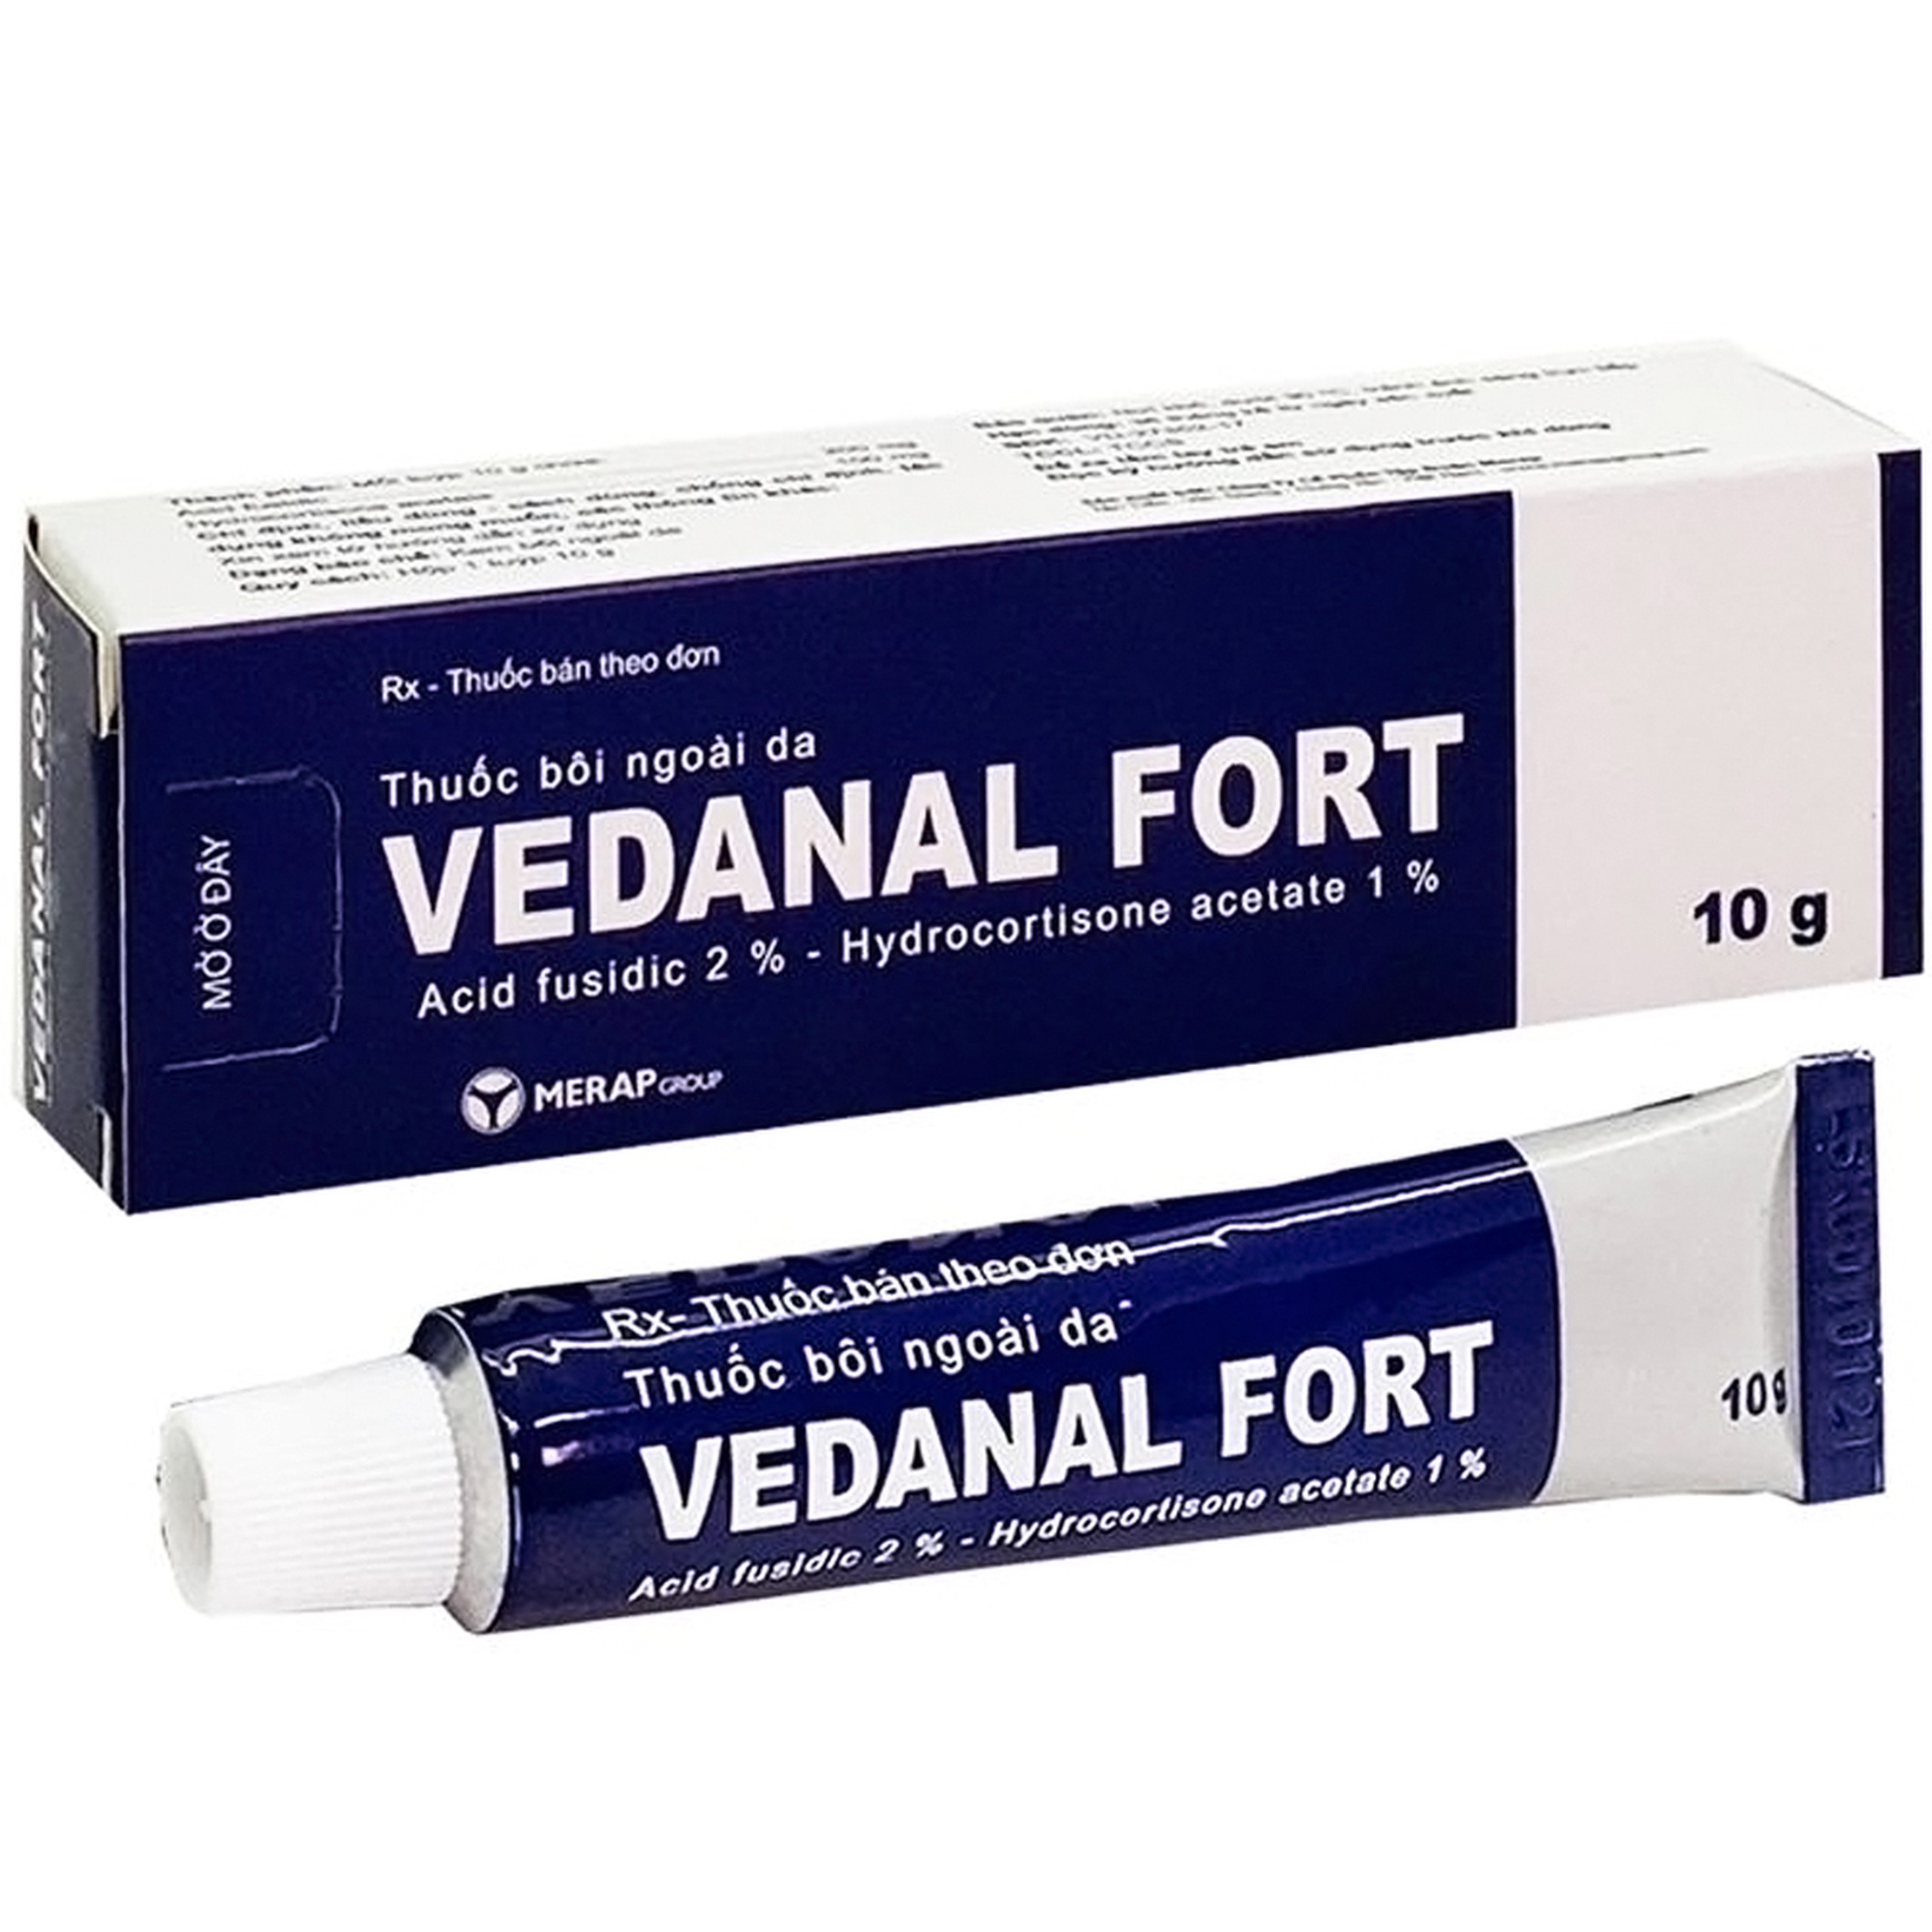 Thuốc bôi ngoài da Vedanal Fort Merap hỗ trợ điều trị viêm da dị ứng, viêm da tiếp xúc (10g)